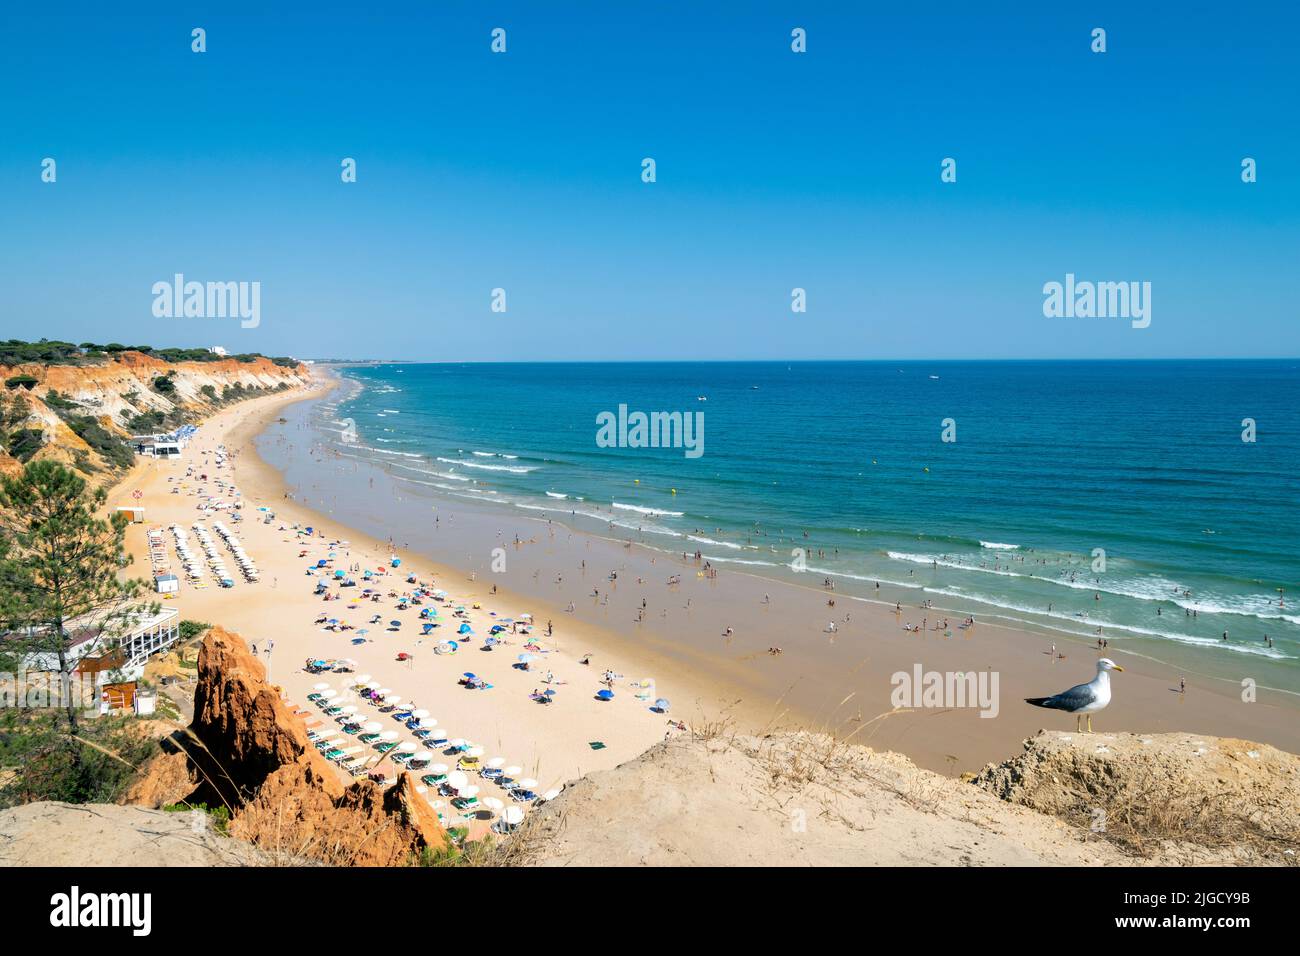 Portugal, Algarve, plage de falesia ' praia da falésia '. Le tourisme du sud du Portugal avec de belles plages et des hôtels. Plage d'été en Algarve. Européen Banque D'Images